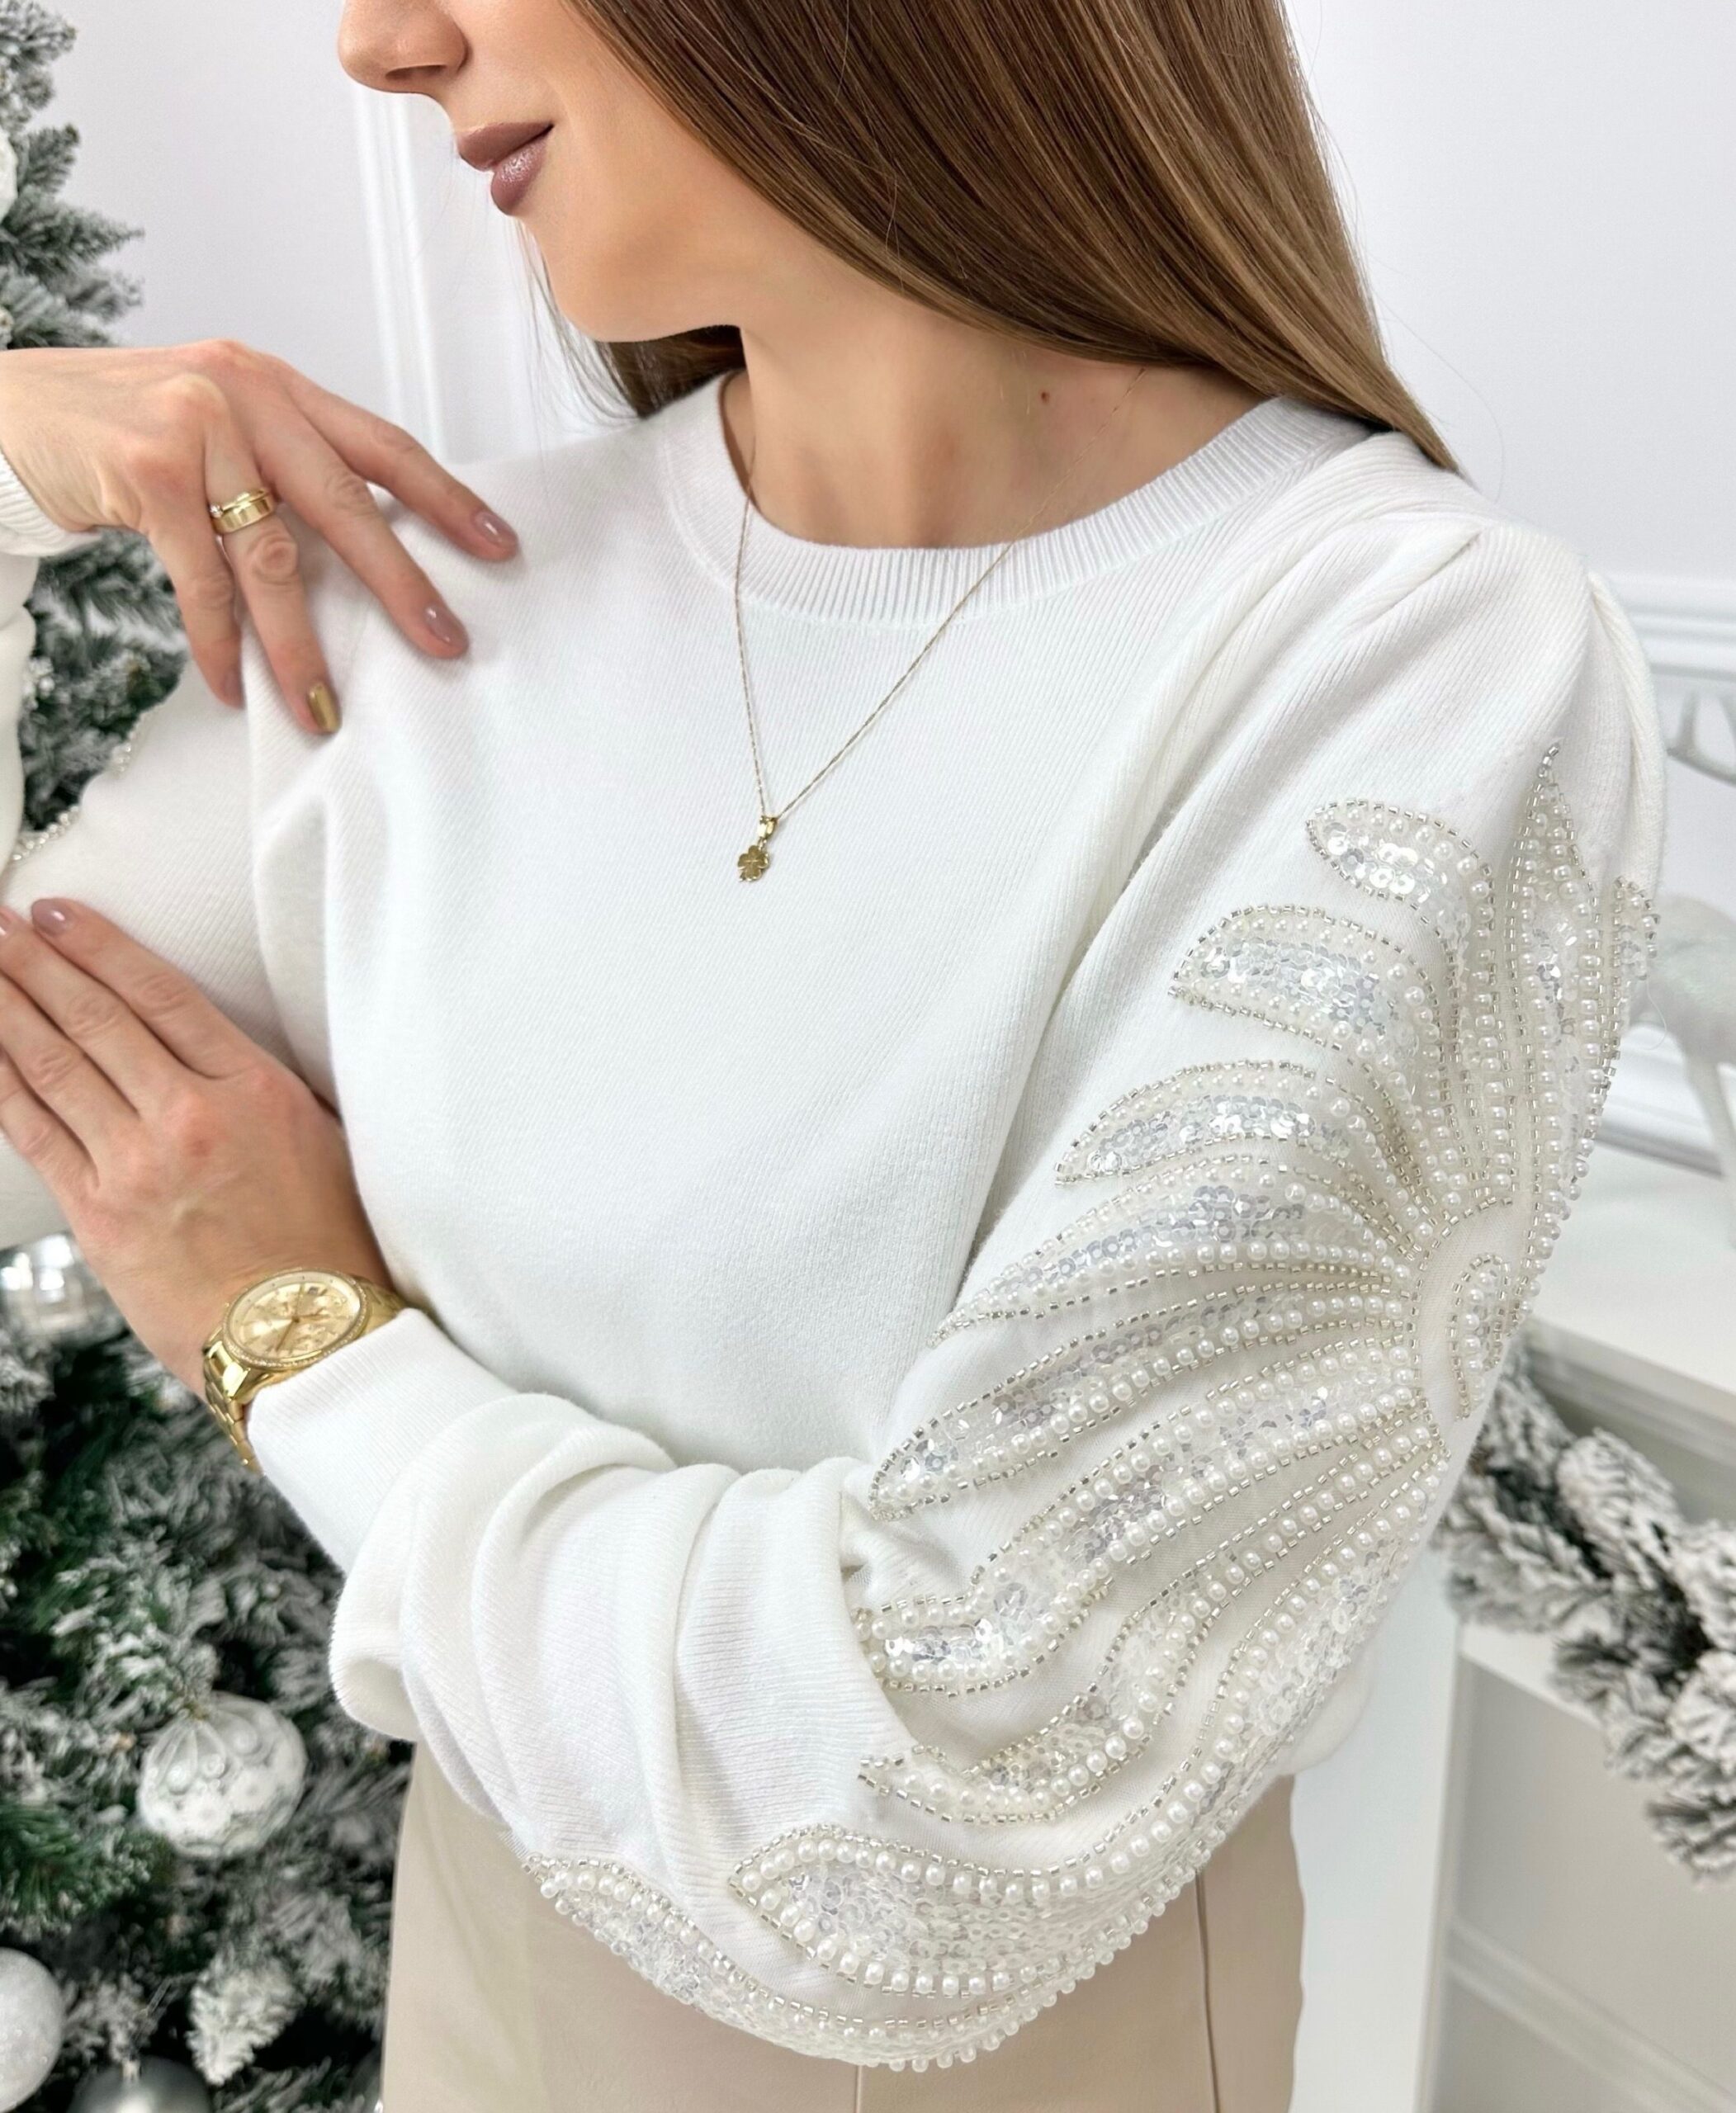 Sweterek Elegant sparkle – śmietankowy